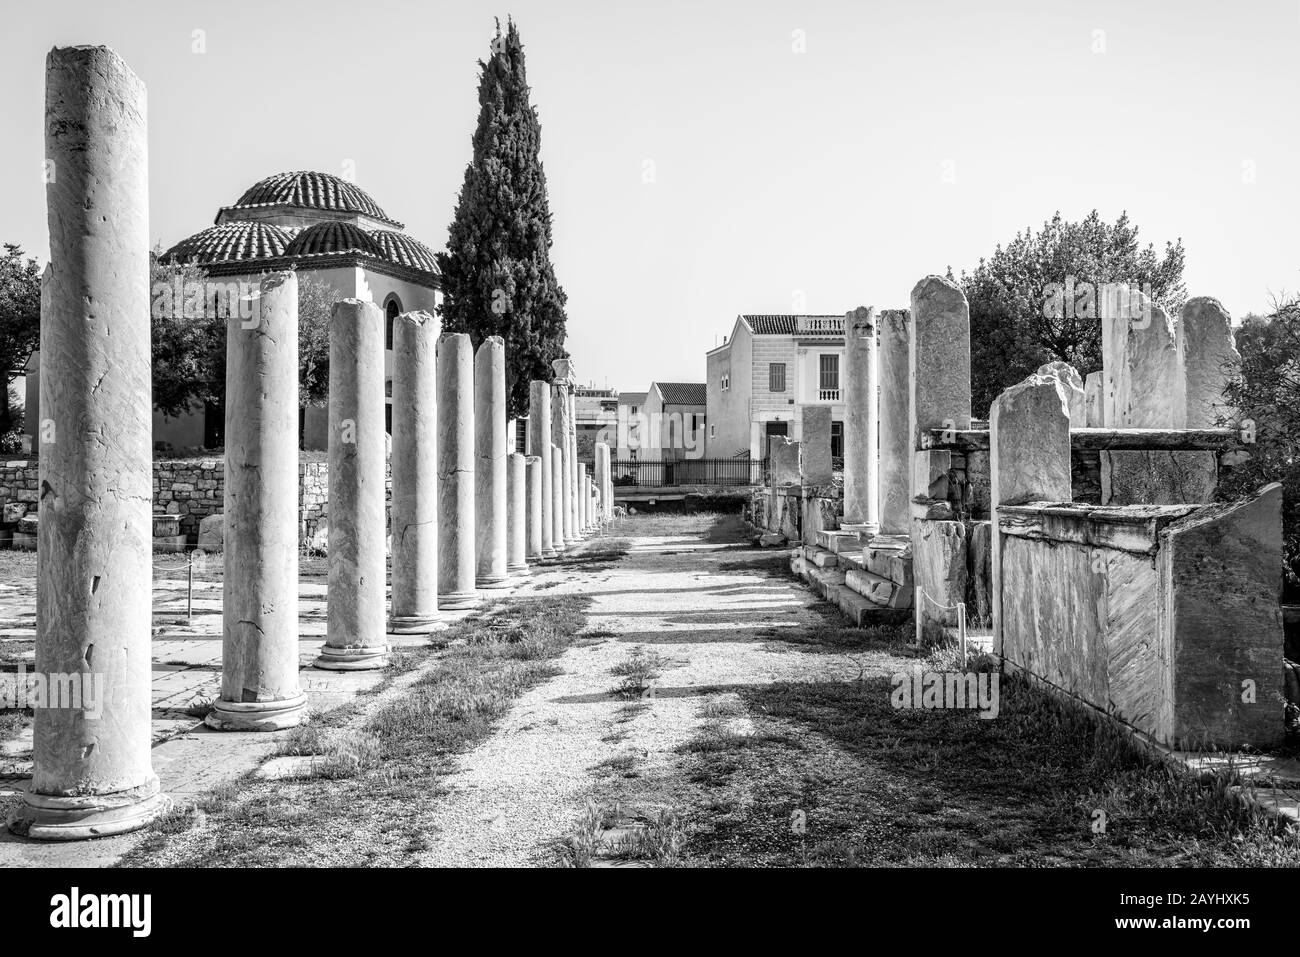 Agora romana in bianco e nero, Atene, Grecia. E' uno dei principali punti di riferimento di Atene. Scenario di antiche rovine greche nel centro di Atene vicino a Plaka Foto Stock